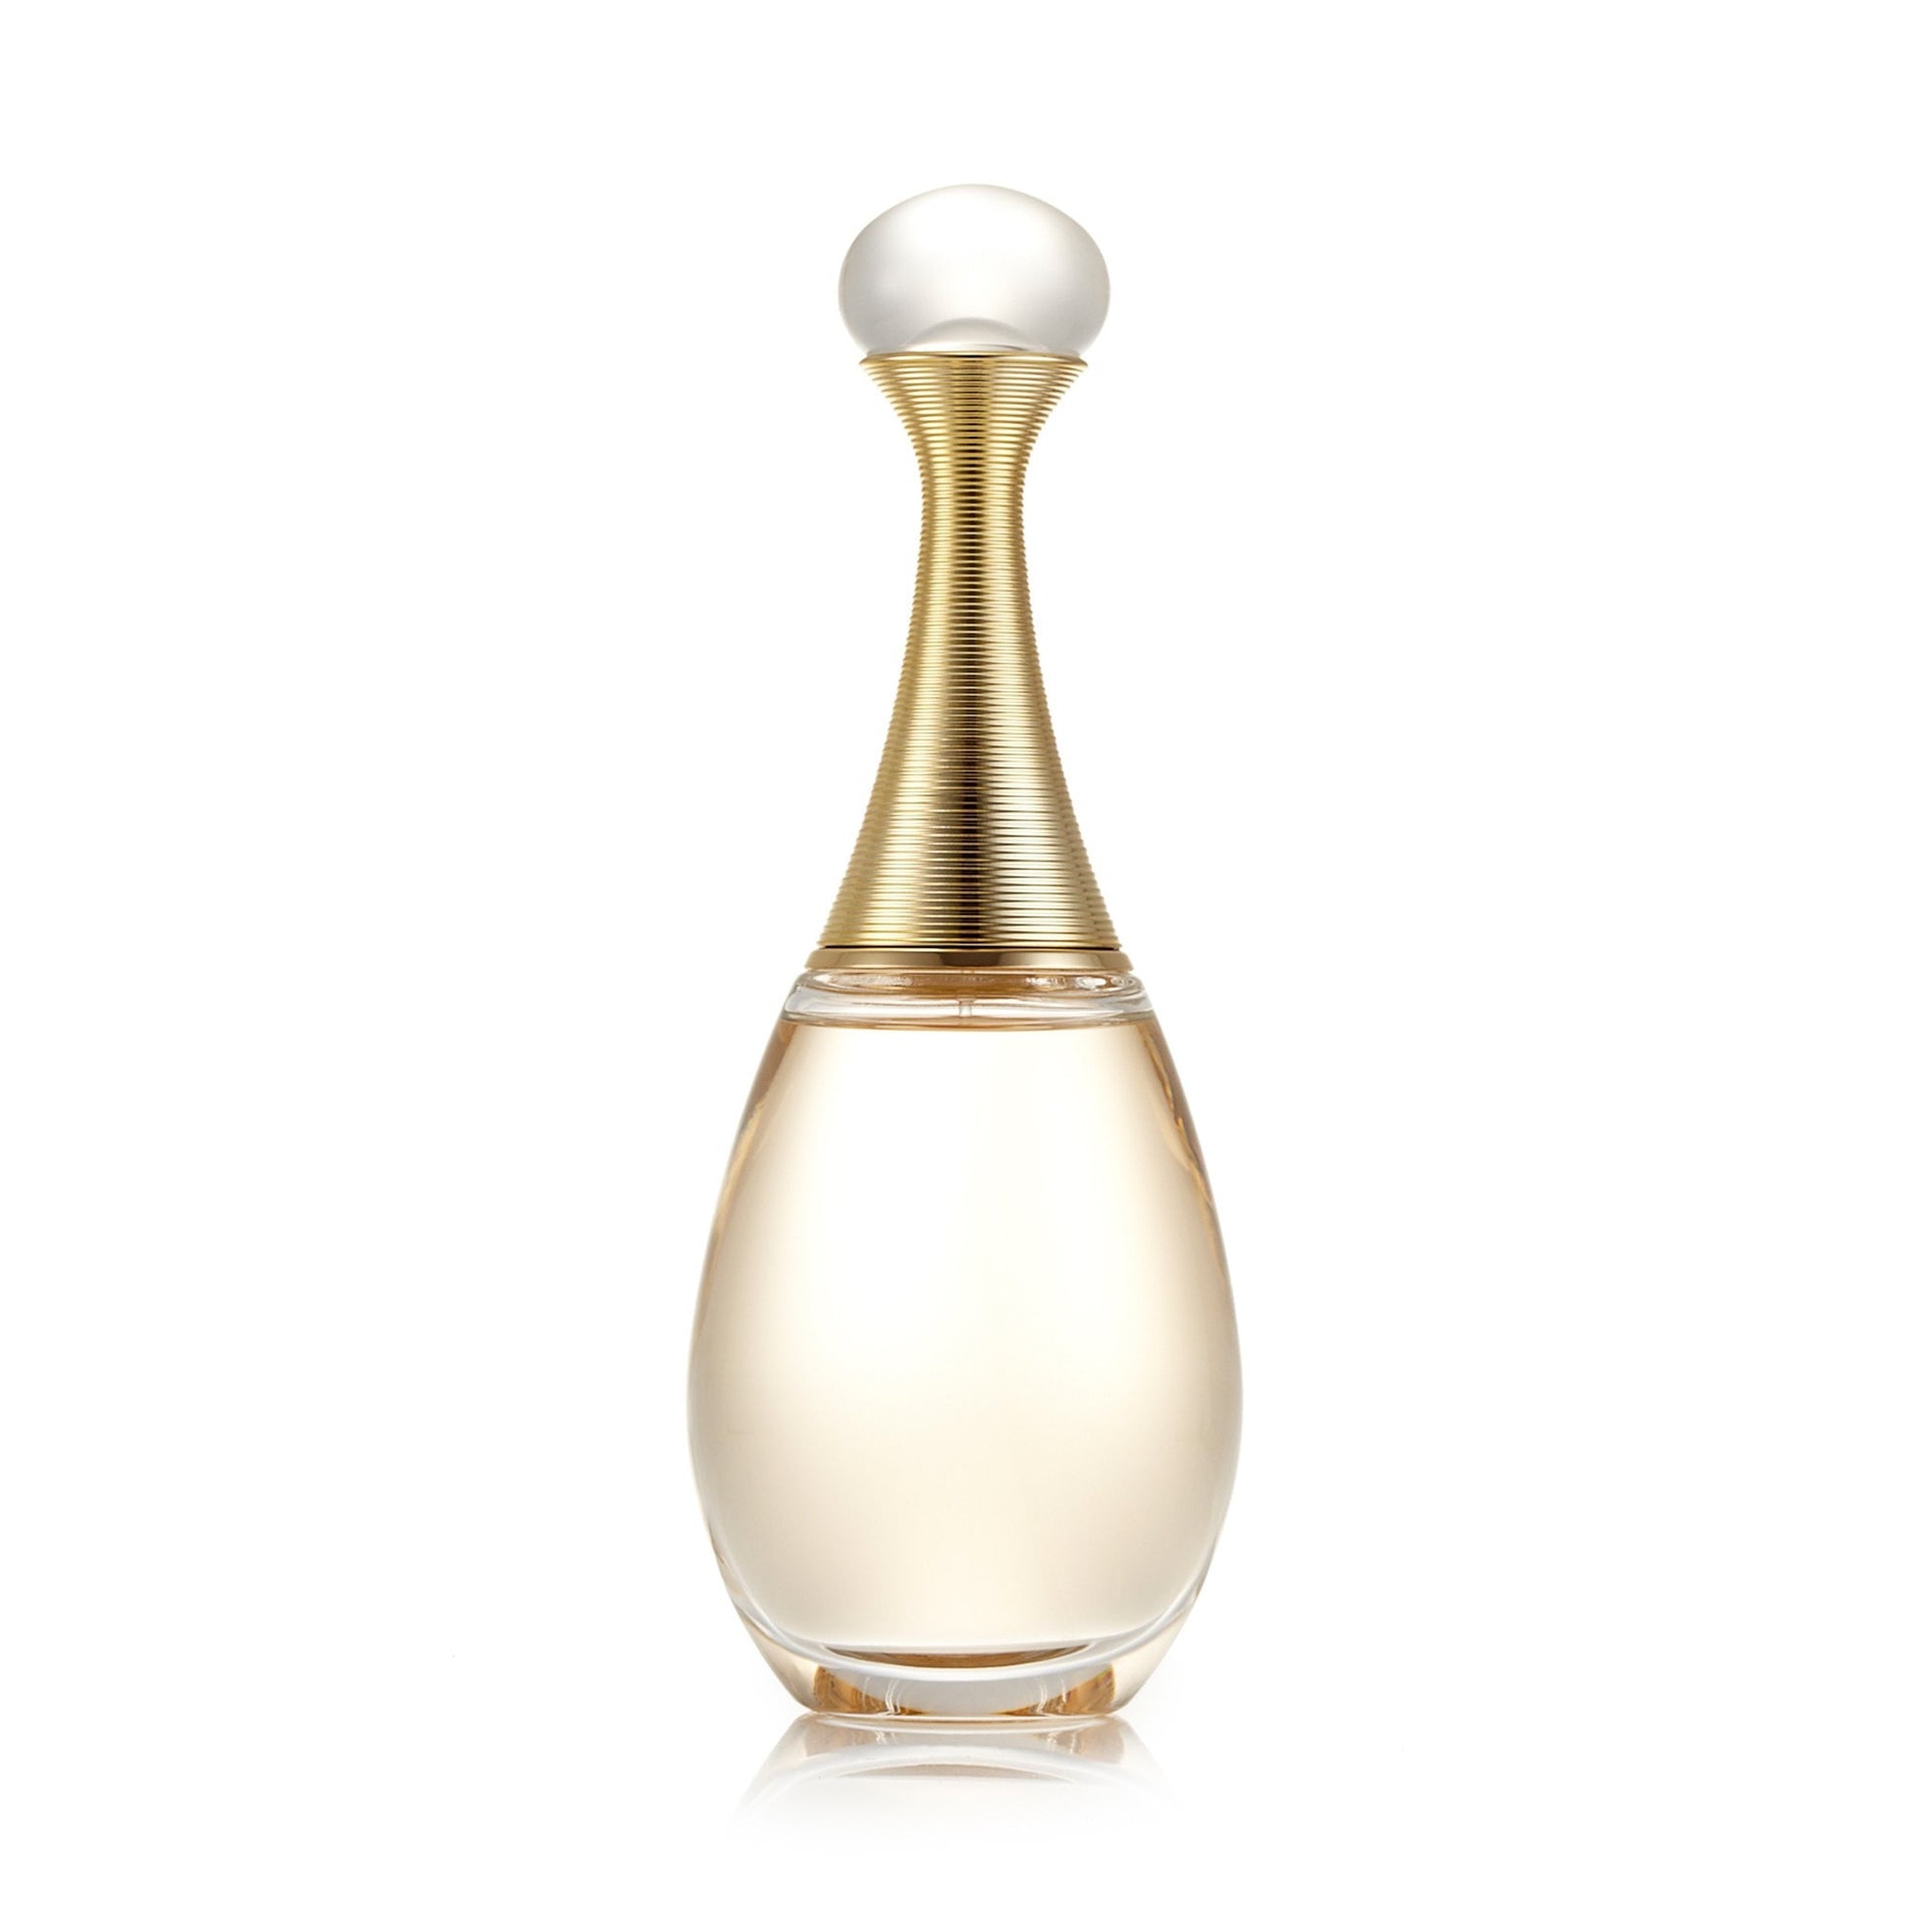 J'Adore Eau de Parfum Spray for Women by Dior 3.4 oz. Click to open in modal